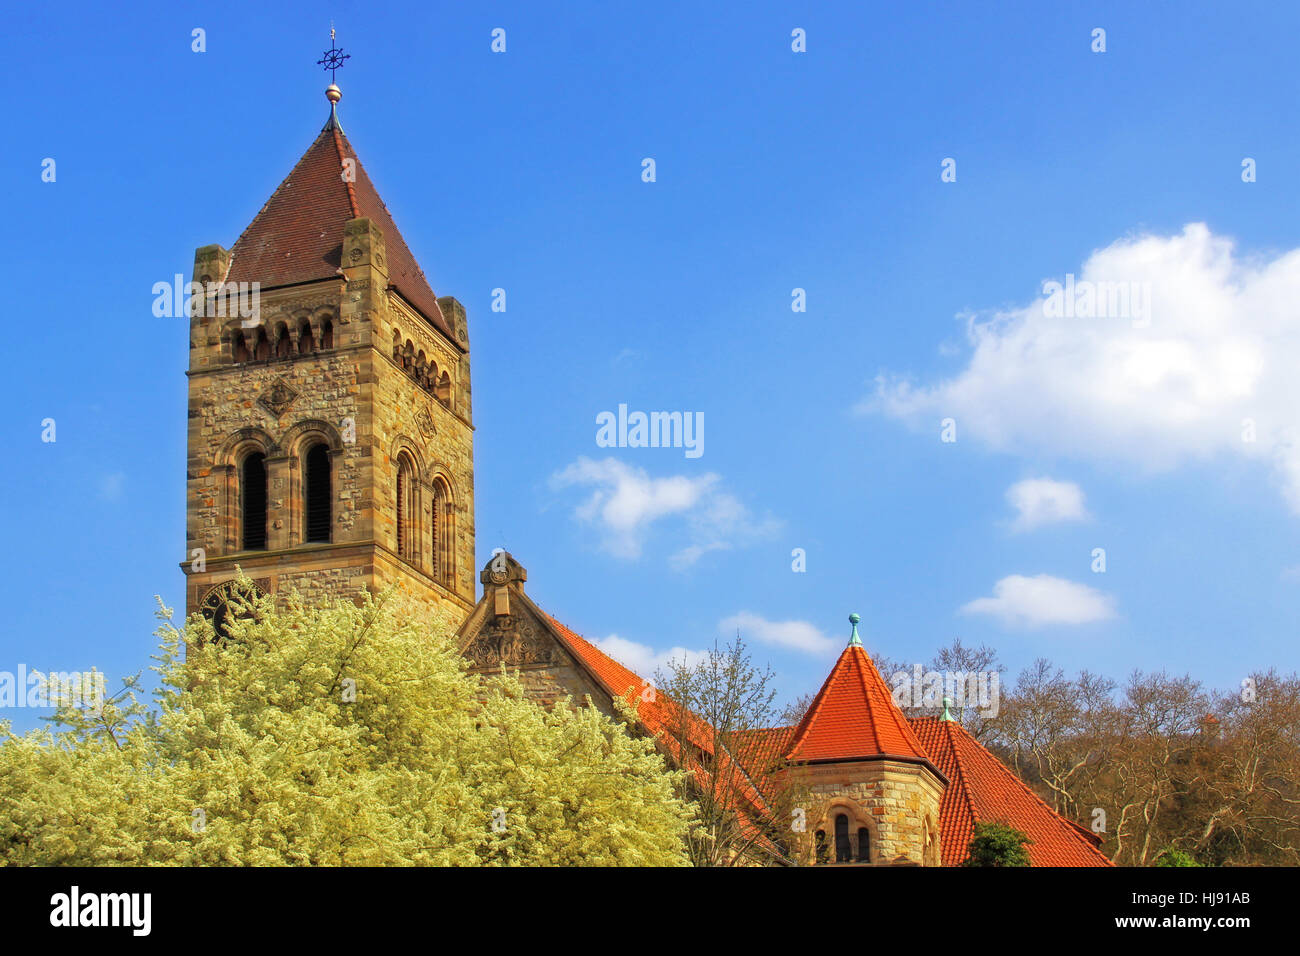 La chiesa, Steeple, parrocchiale evangelica, peterskirche, Torre, chiesa, fiorisce, molla Foto Stock